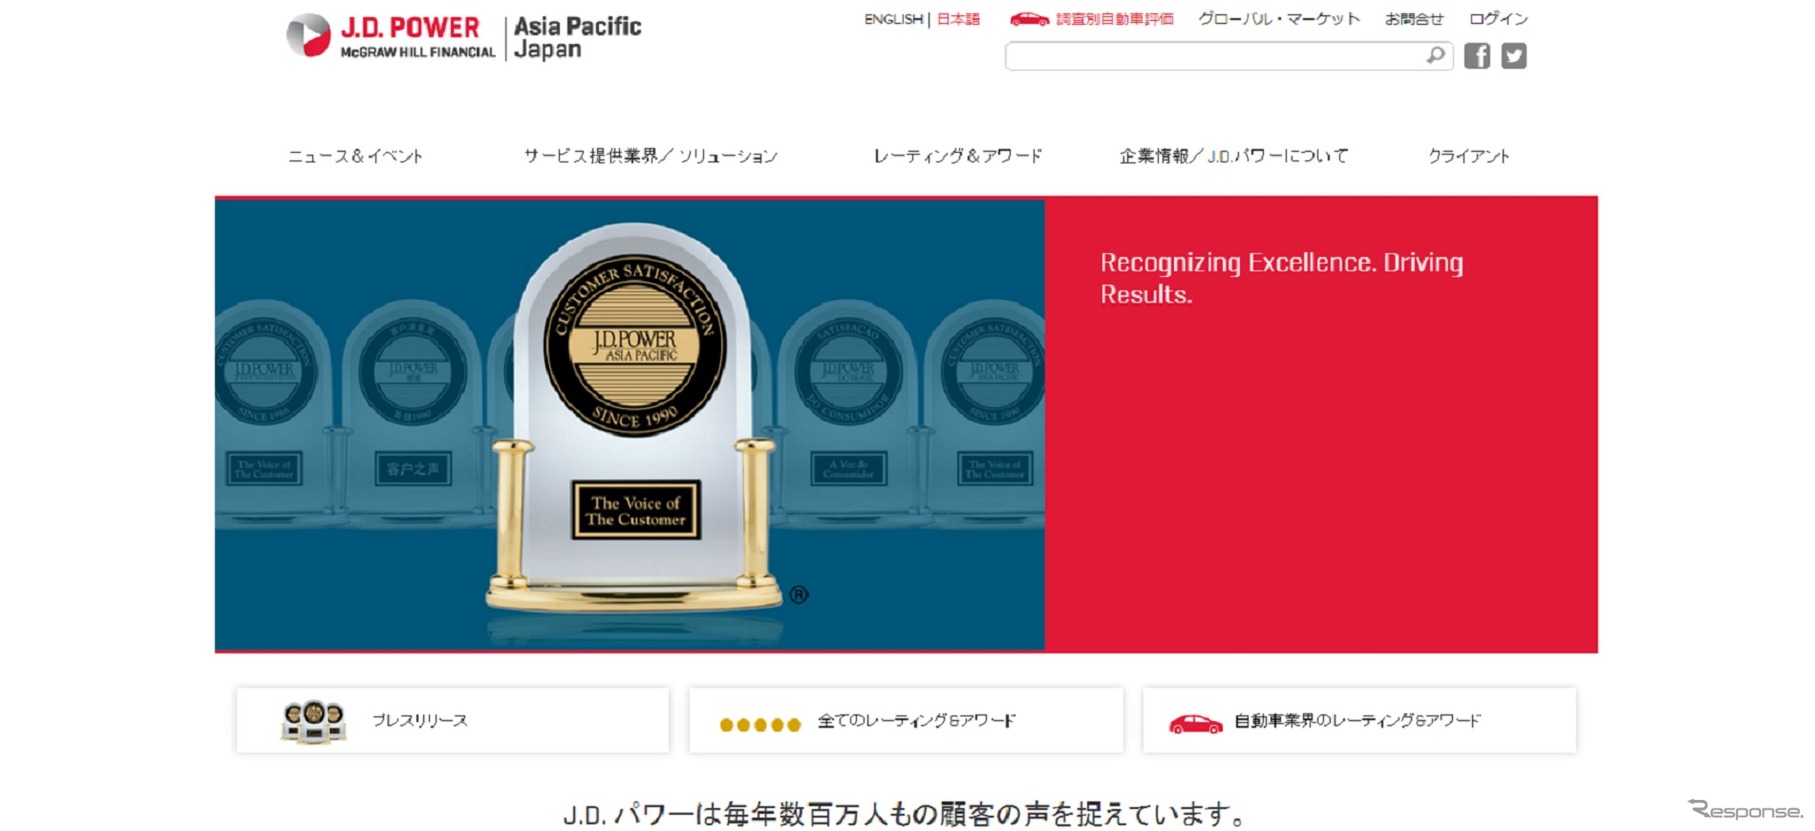 自動車の総合情報サイト「J.D.Power Japan Cars」のイメージ